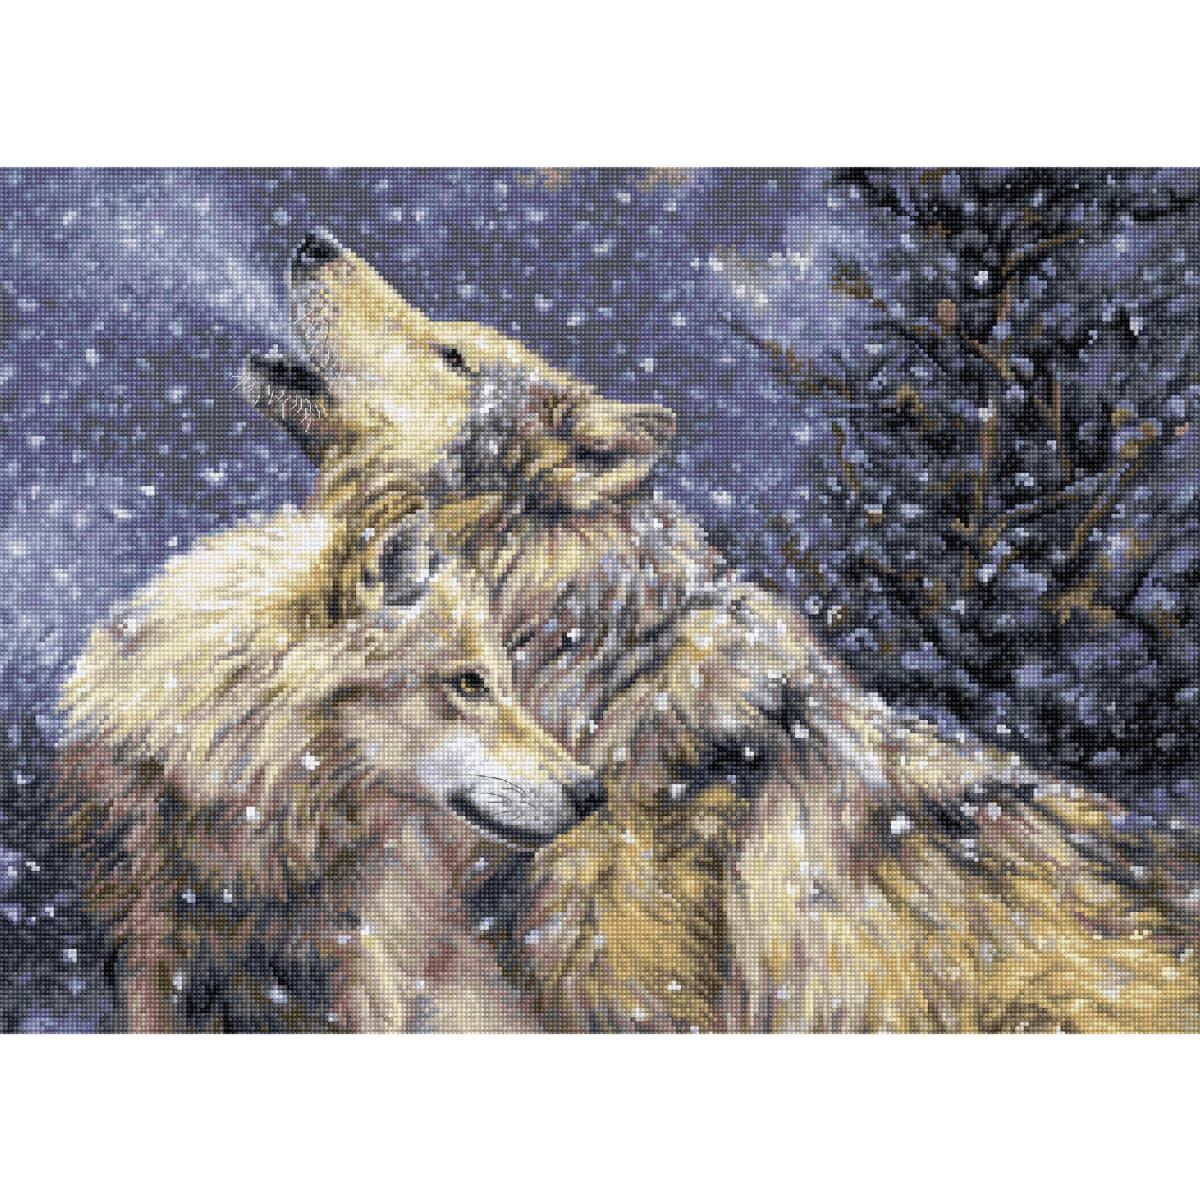 Zwei Wölfe stehen in einer verschneiten Landschaft...